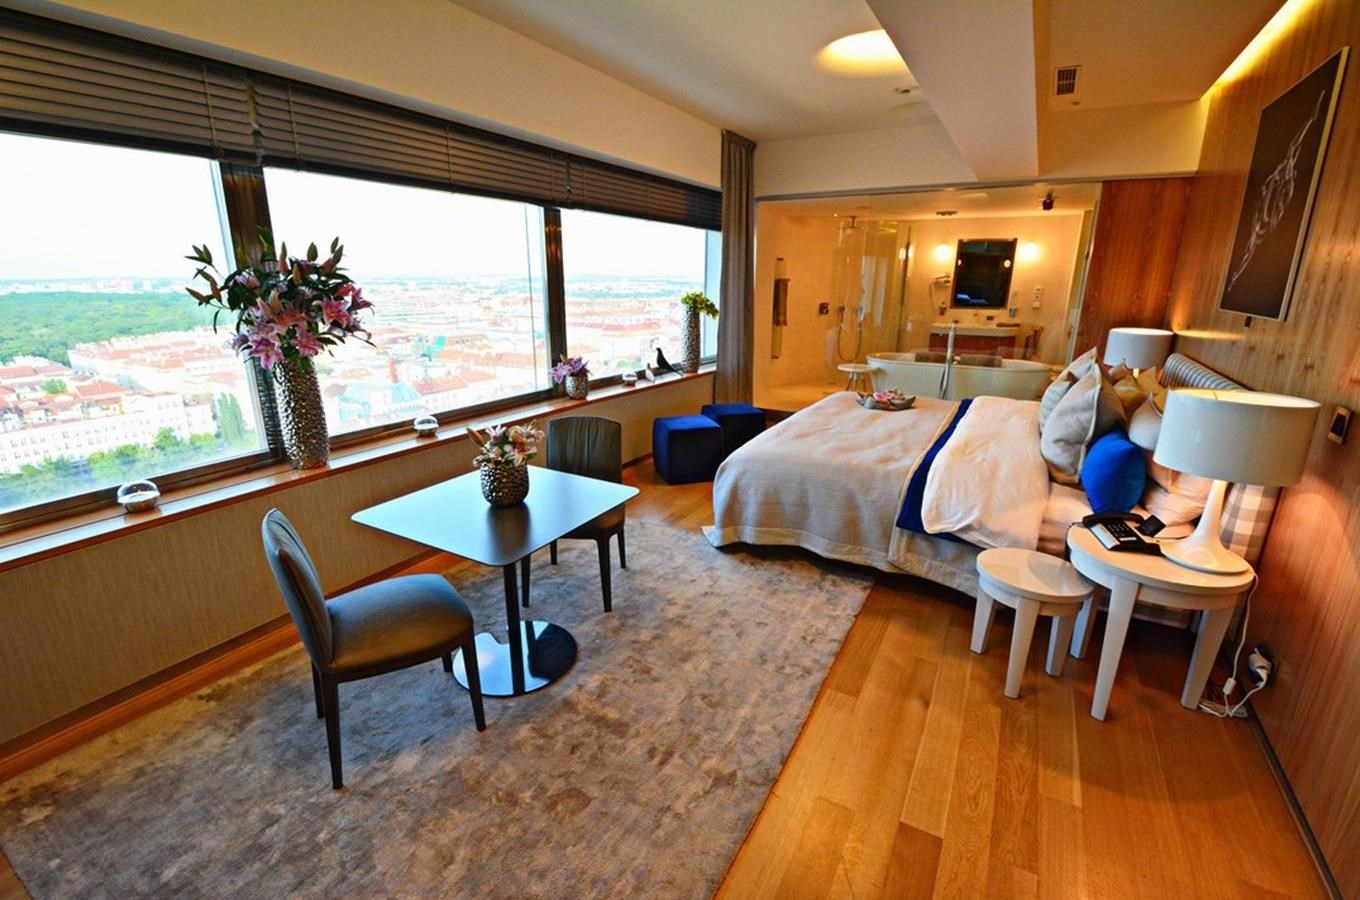 One Room Hotel - luxusní ubytování na Žižkovské věži